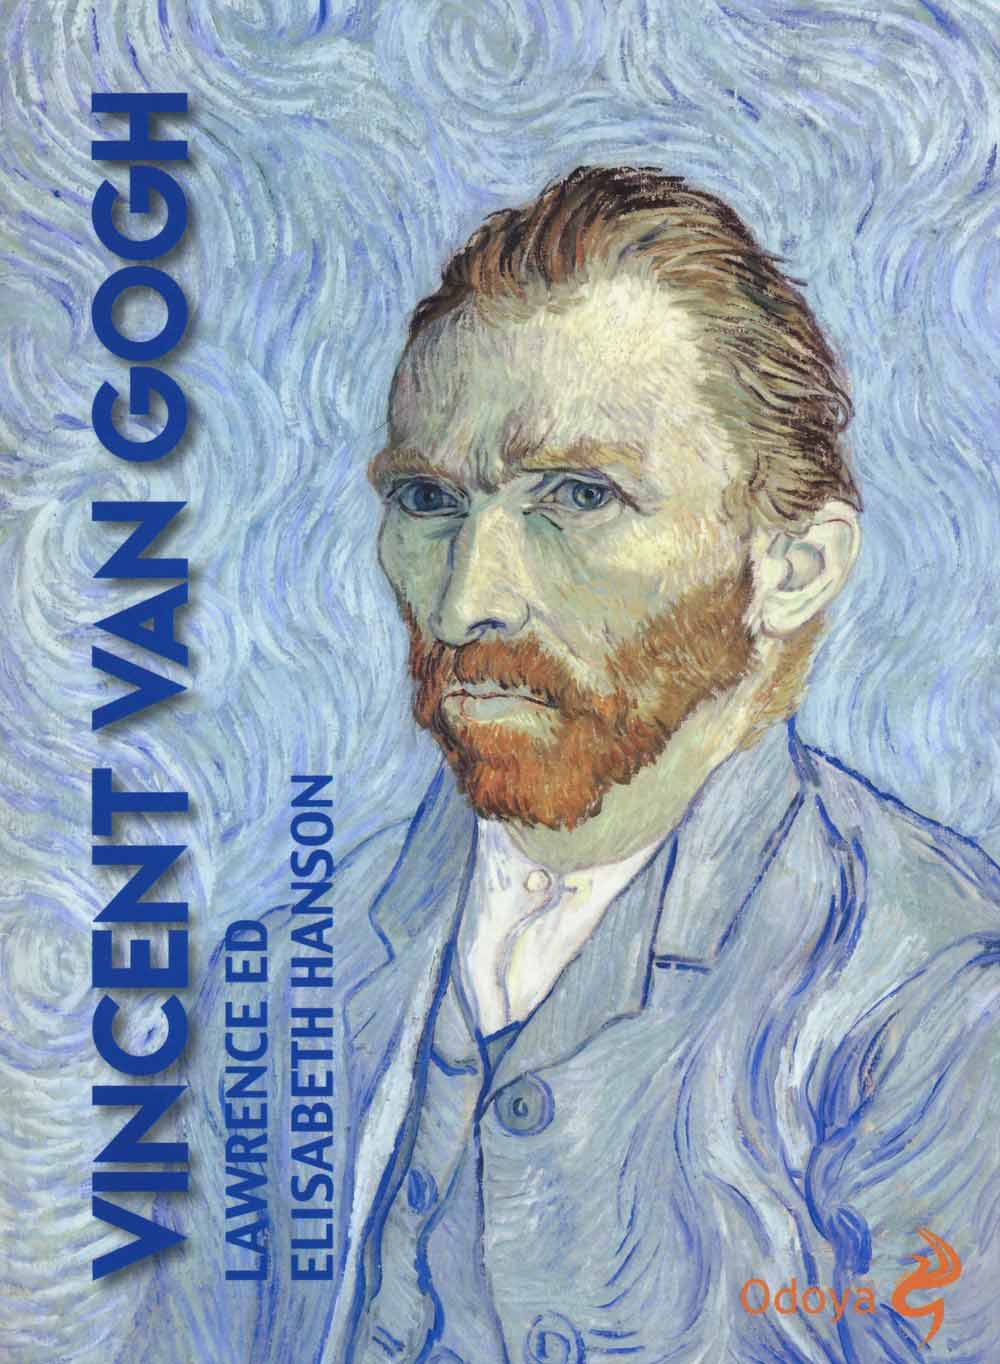 Libri Lawrence Hanson / Elisabeth Hanson - Vincent Van Gogh NUOVO SIGILLATO, EDIZIONE DEL 01/10/2015 SUBITO DISPONIBILE